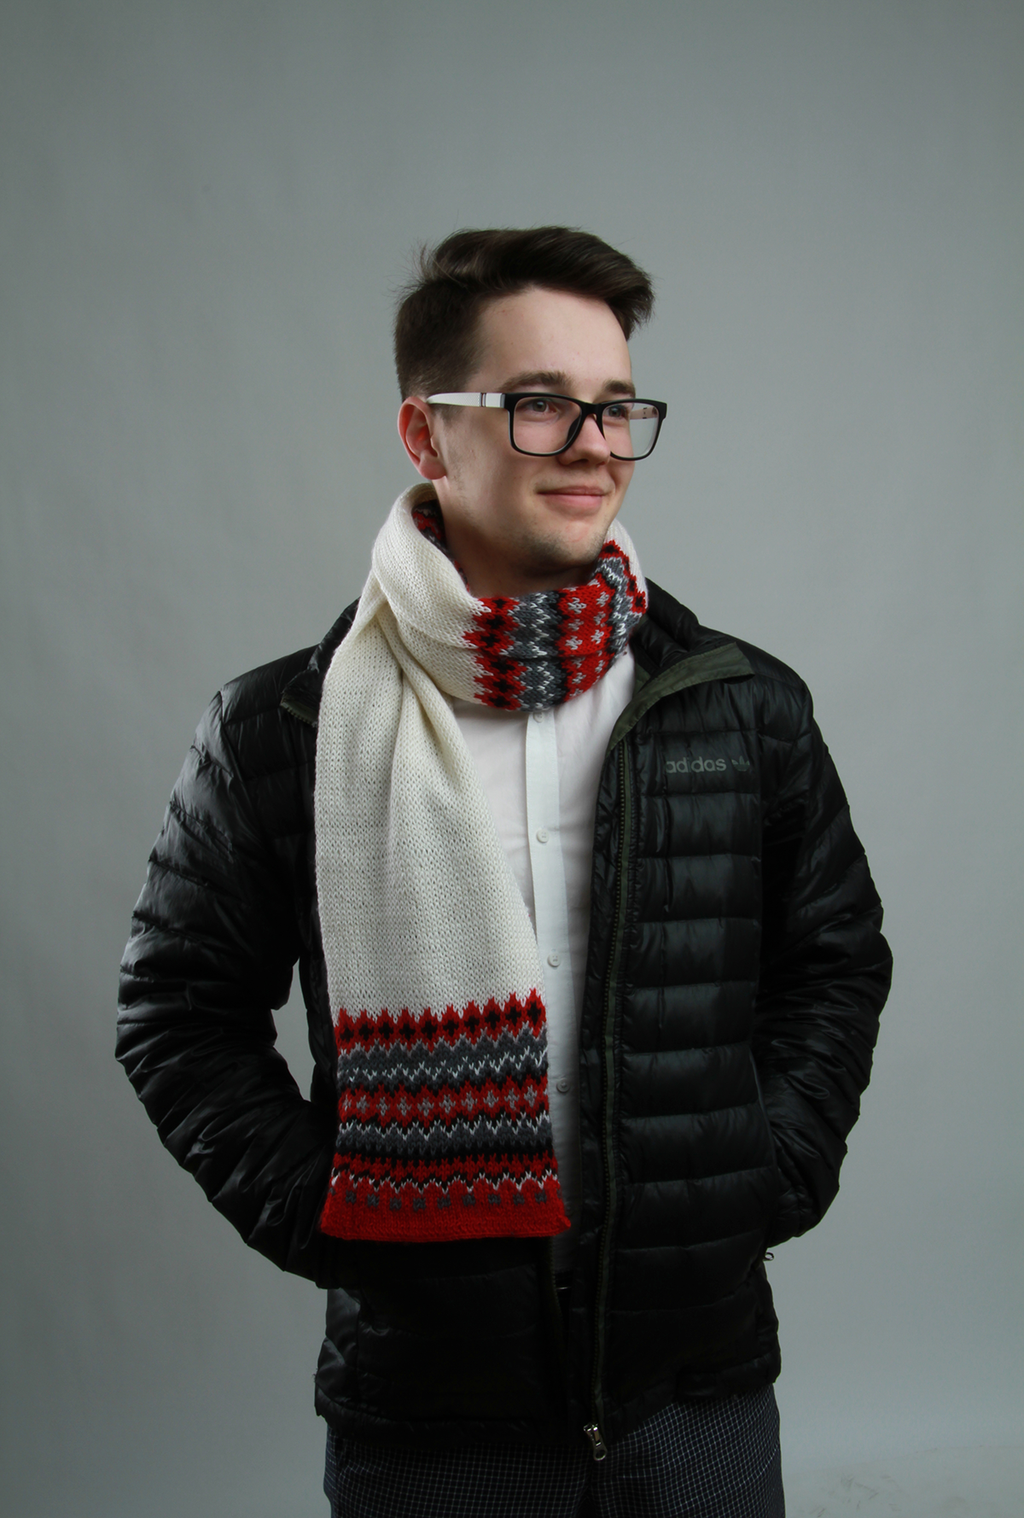 Студент РАНХиГС Дмитрий Кияченко в качестве модели демонстрирует стильный мужской шарф из «Бабушкиного чулана»